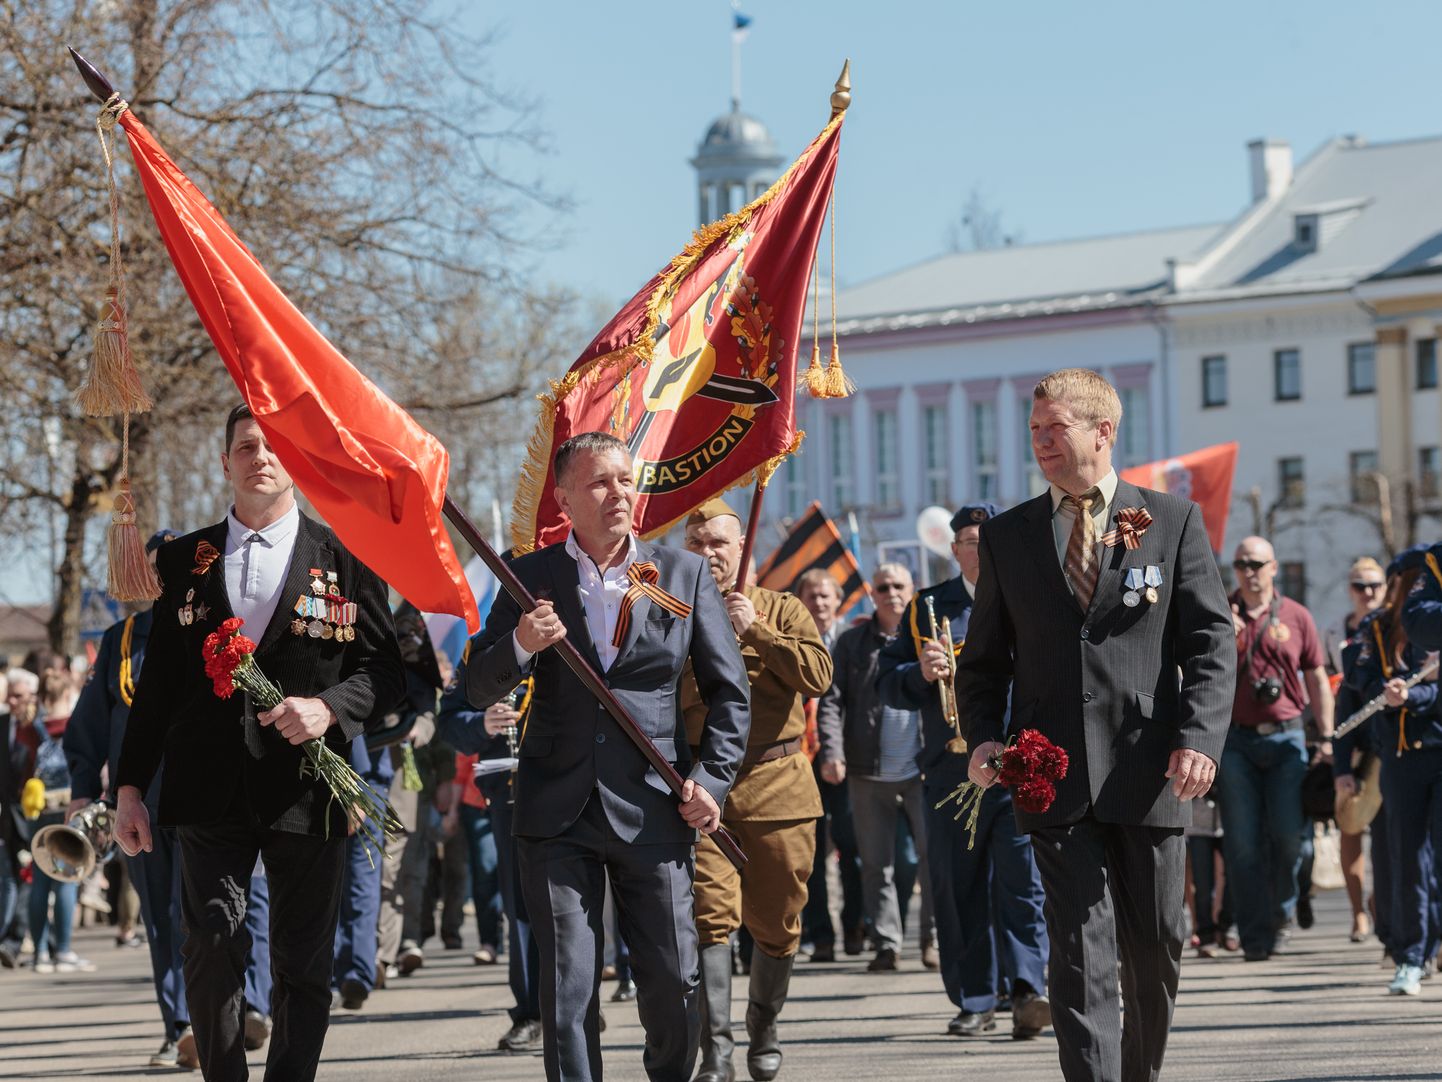 Таких собраний под красными и российскими флагами, какие были в предыдущие годы на 9 мая в Нарве и других городах, в этом году устраивать нельзя.